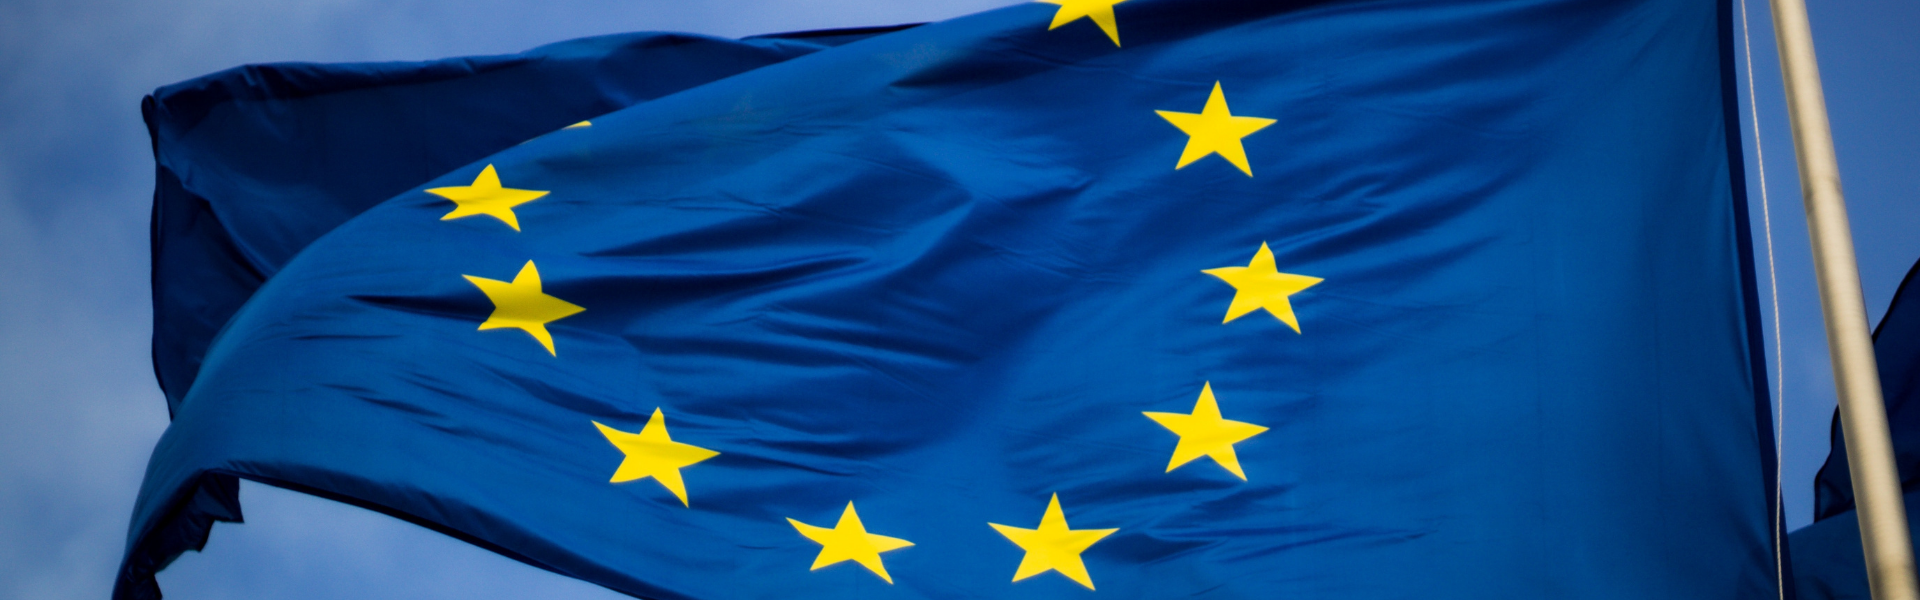 Bandera de Europa - Cómo solicitar la Tarjeta Sanitaria Europea - CertificadoElectronico.es